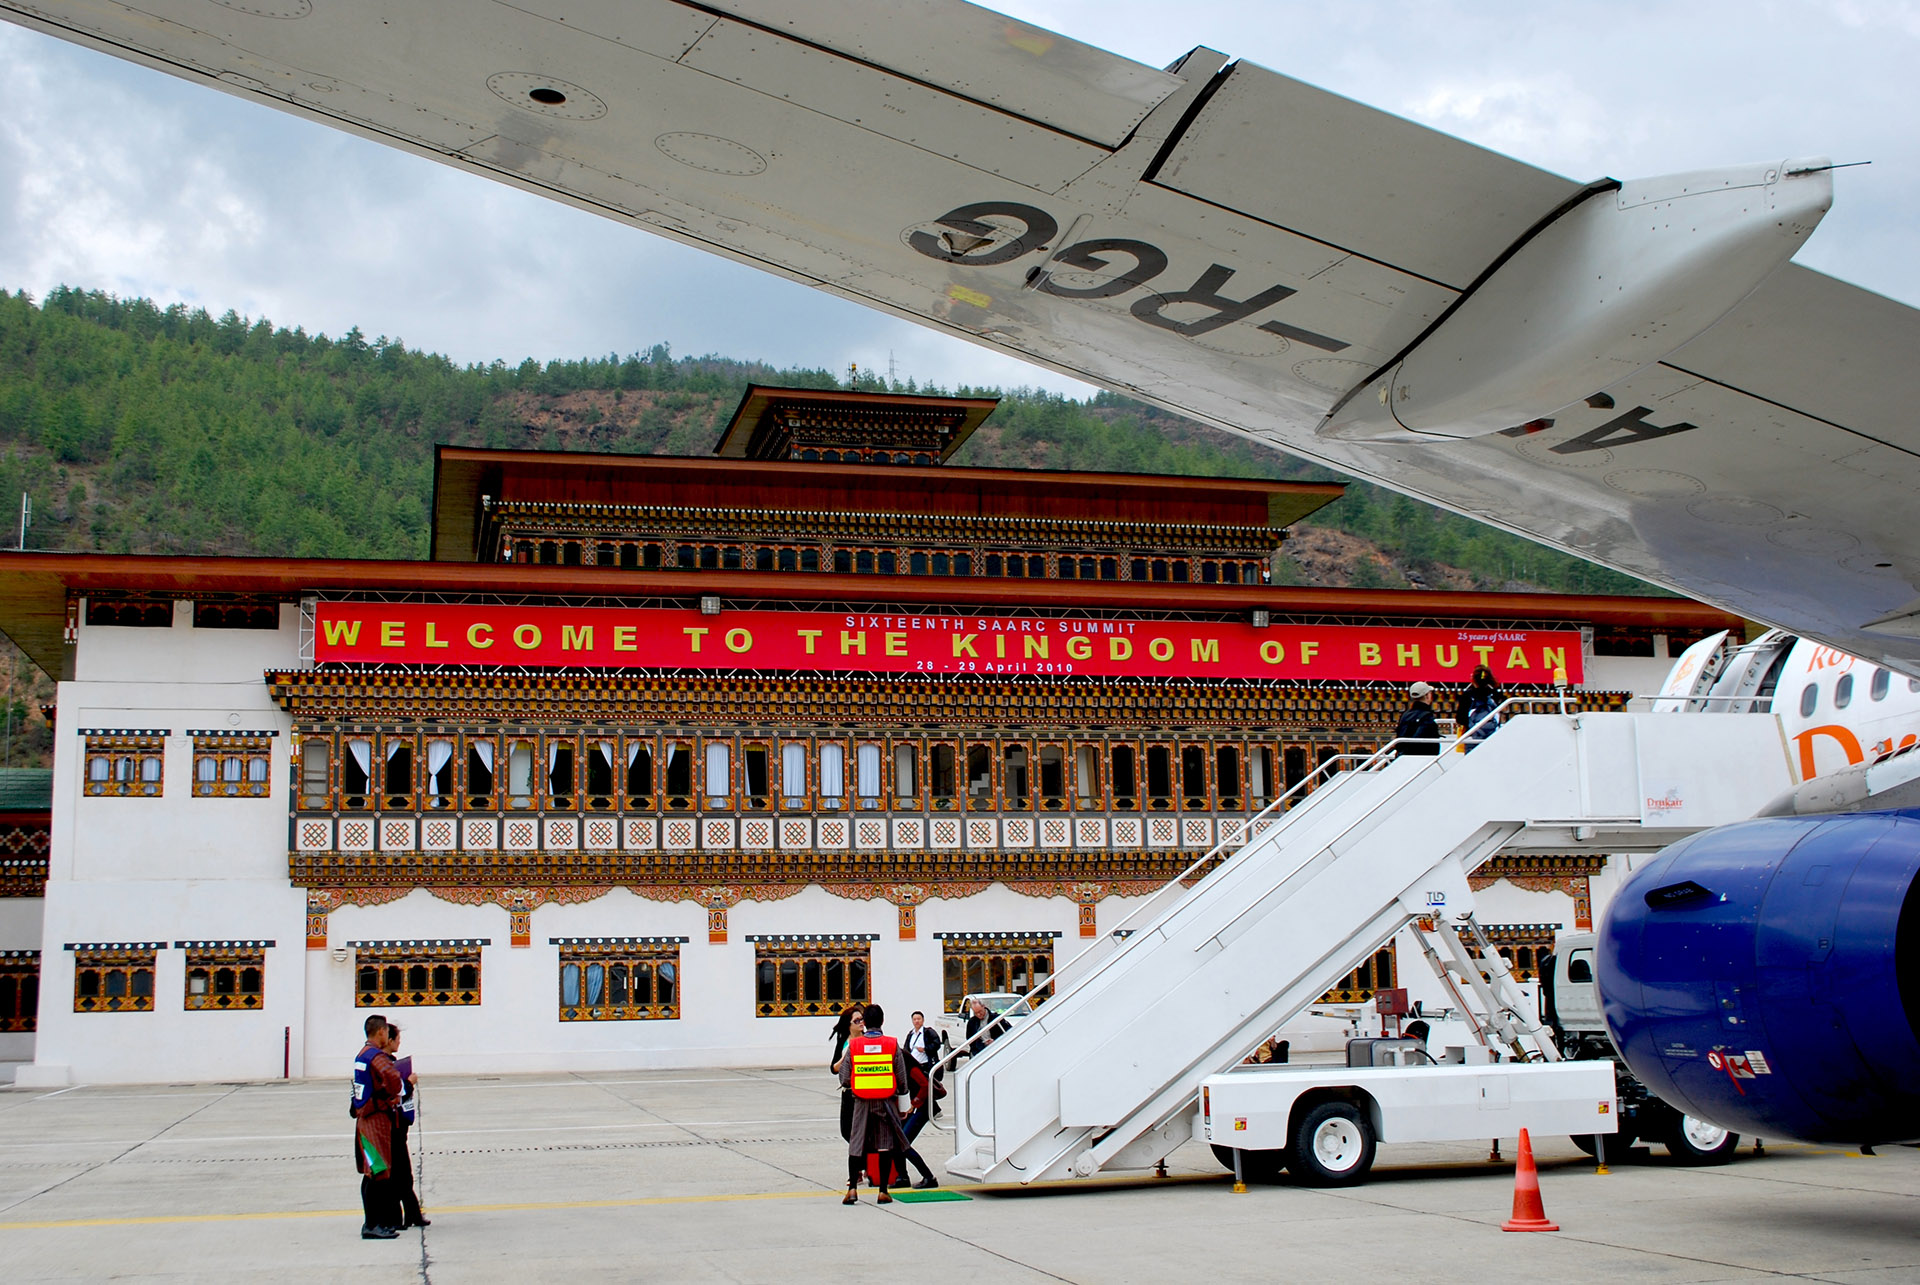 Reino do Butão aeroporto